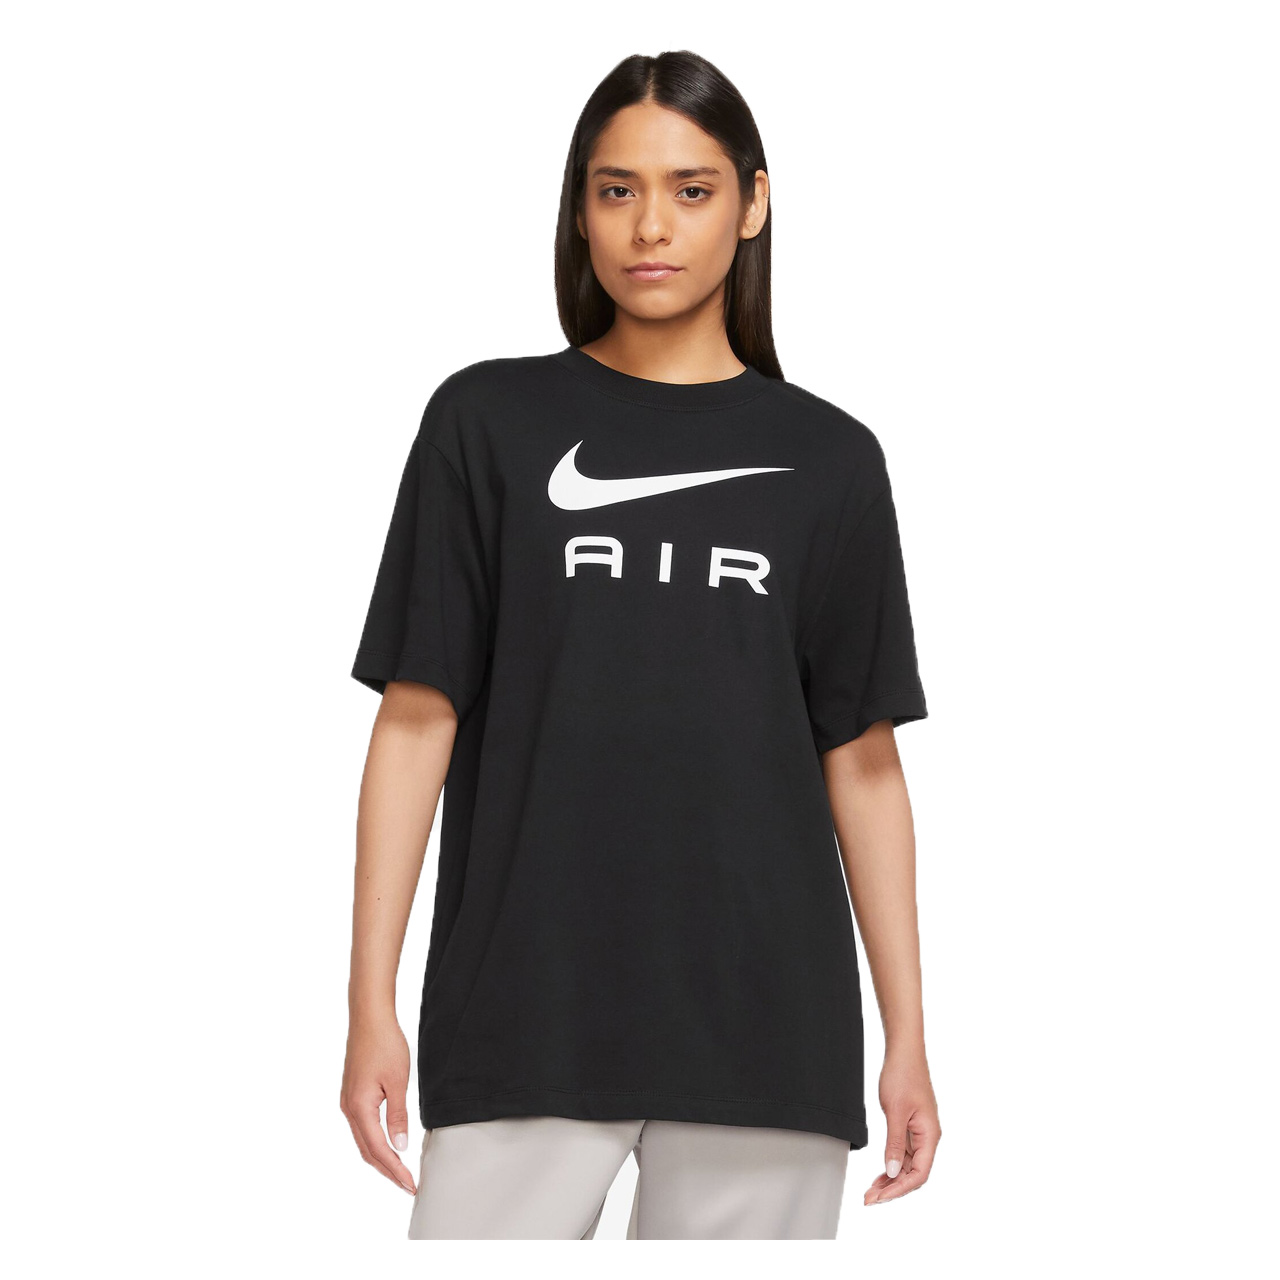 Damen T-Shirt Nike Air 